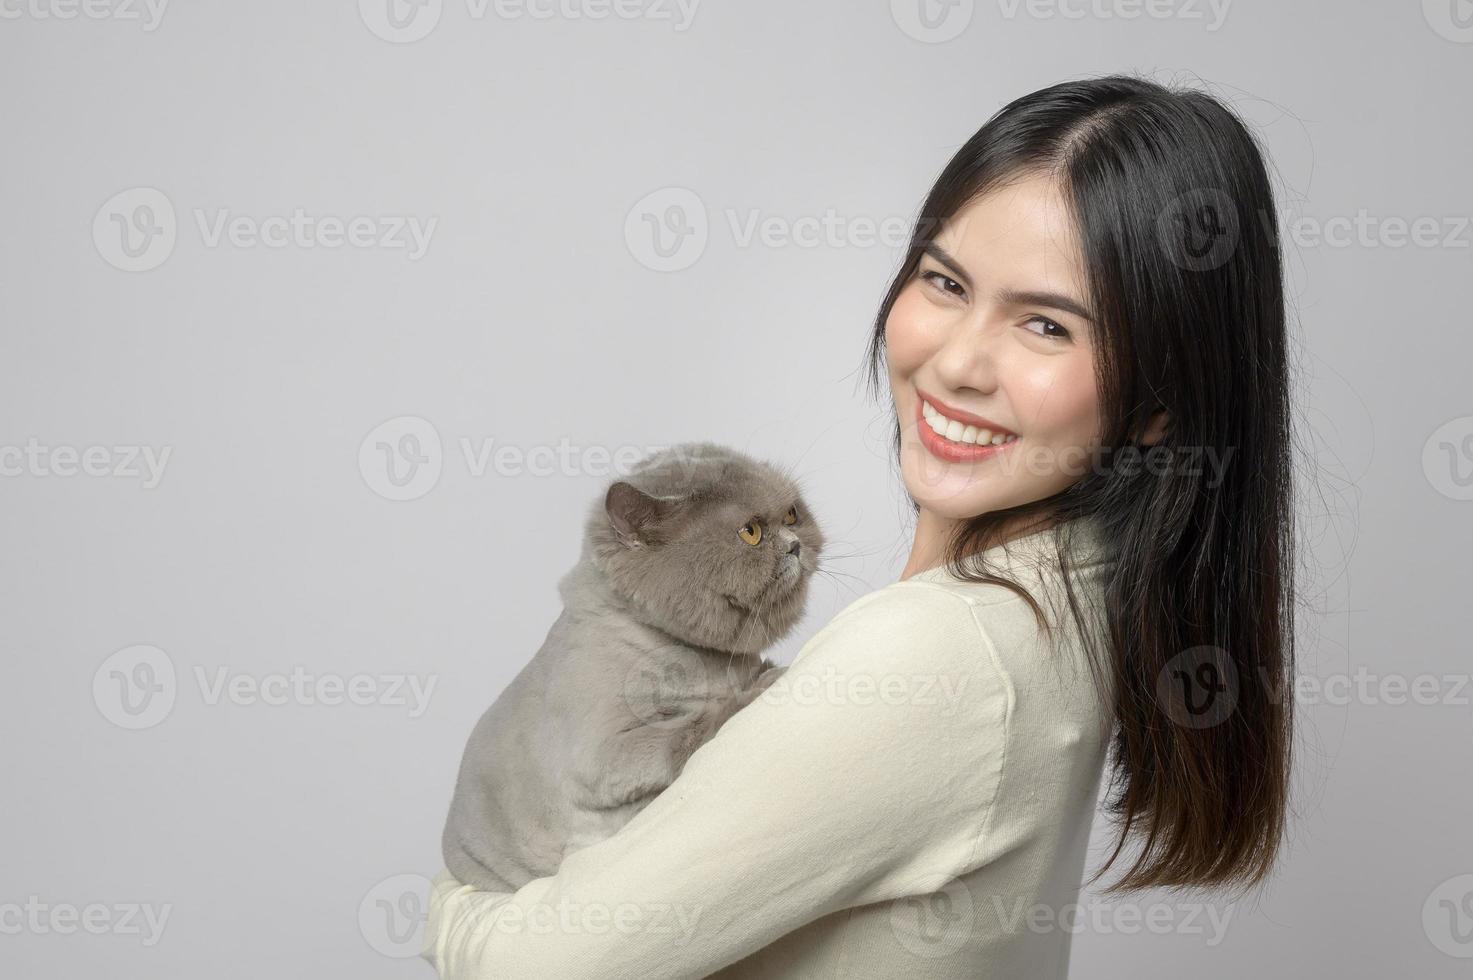 una mujer joven está sosteniendo un gato adorable, jugando con un gato en un estudio de fondo blanco foto